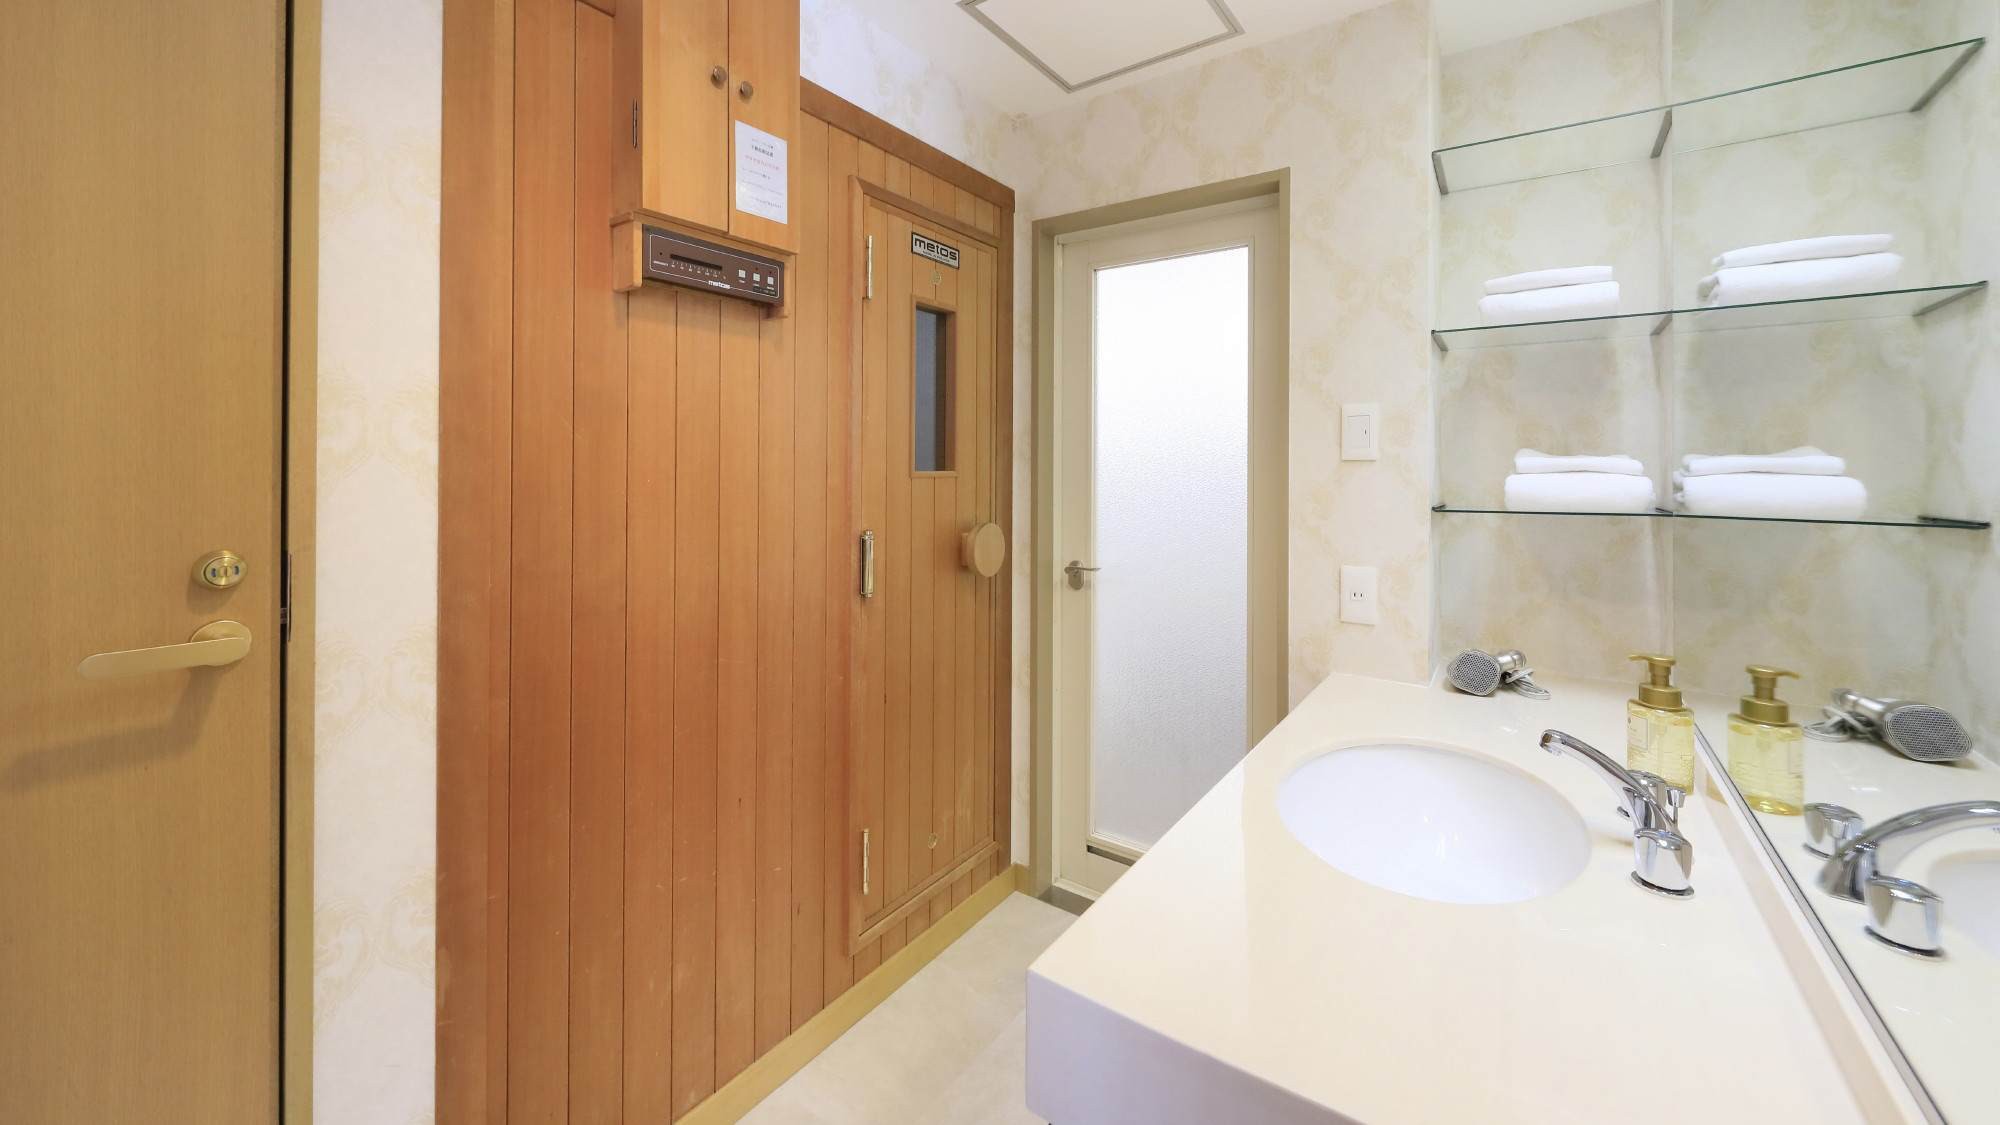 【スイート】バスルーム・トイレ・洗面所は独立、室内にサウナもございます。